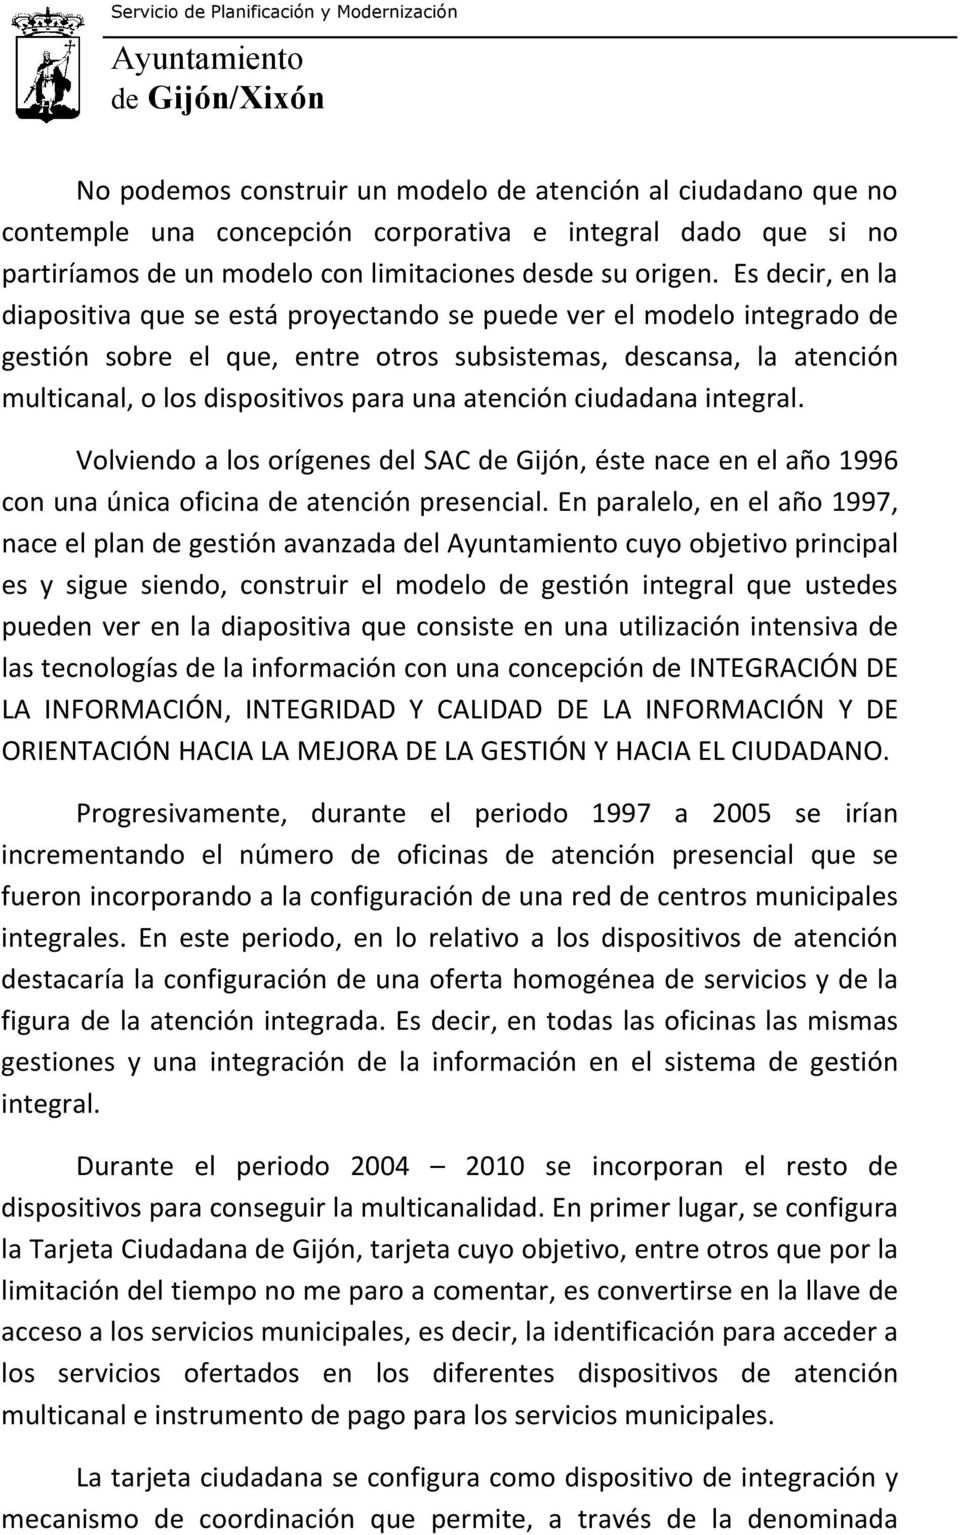 atención ciudadana integral. Volviendo a los orígenes del SAC de Gijón, éste nace en el año 1996 con una única oficina de atención presencial.